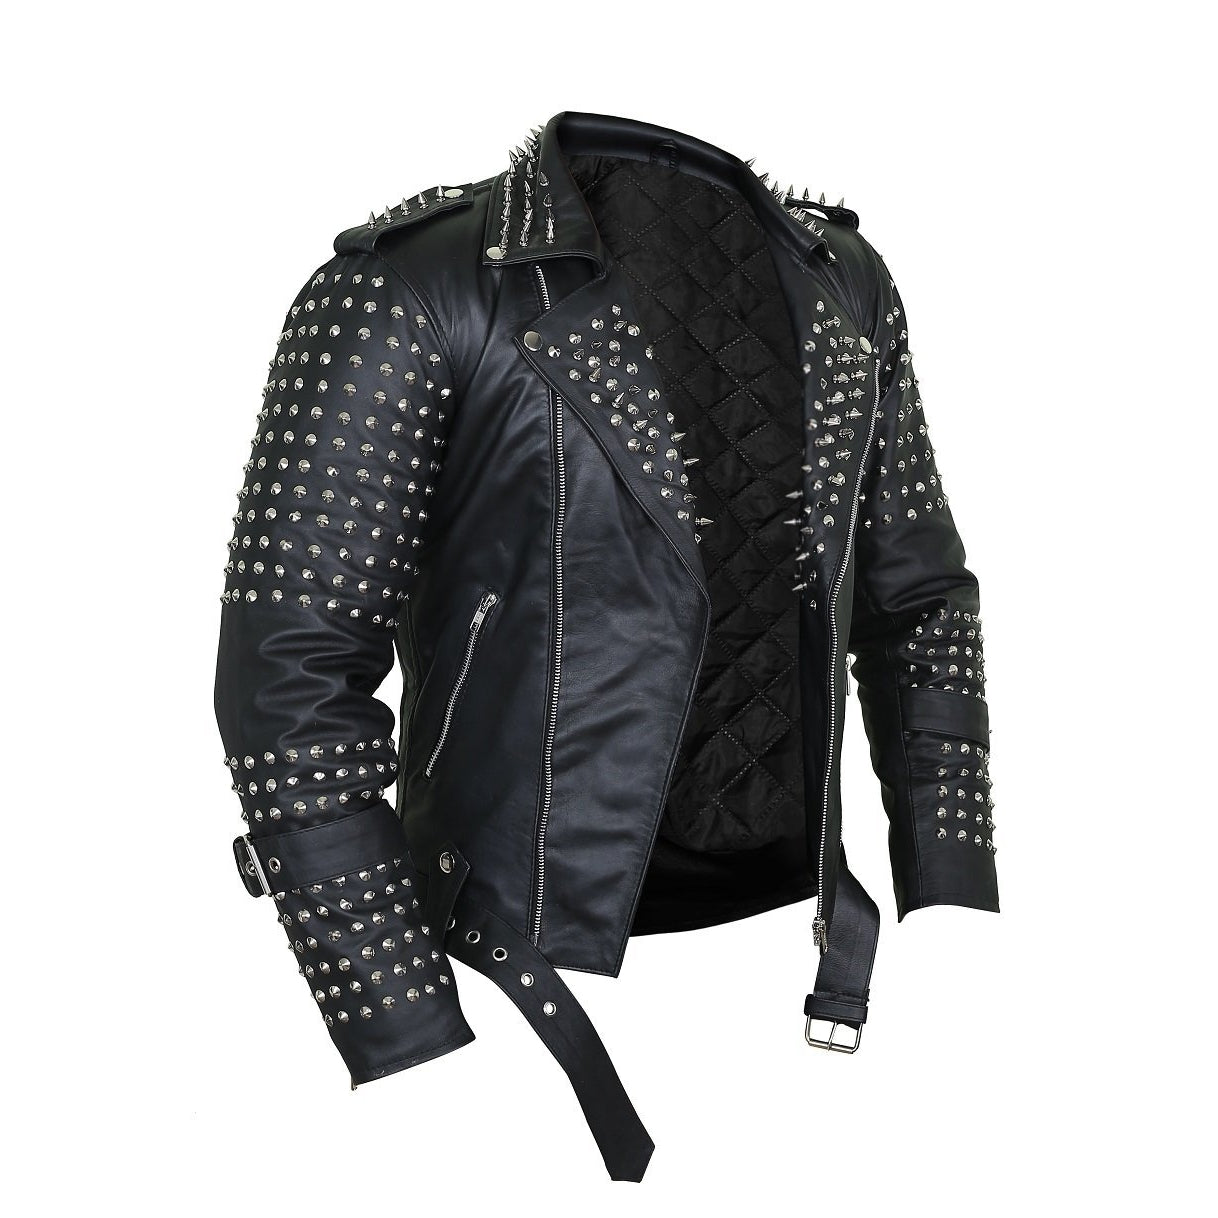 https://leatherskinshop.com/cdn/shop/products/Black-Punk-Leather-Jacket-with-Metal-Decor-1.jpg?v=1558698186